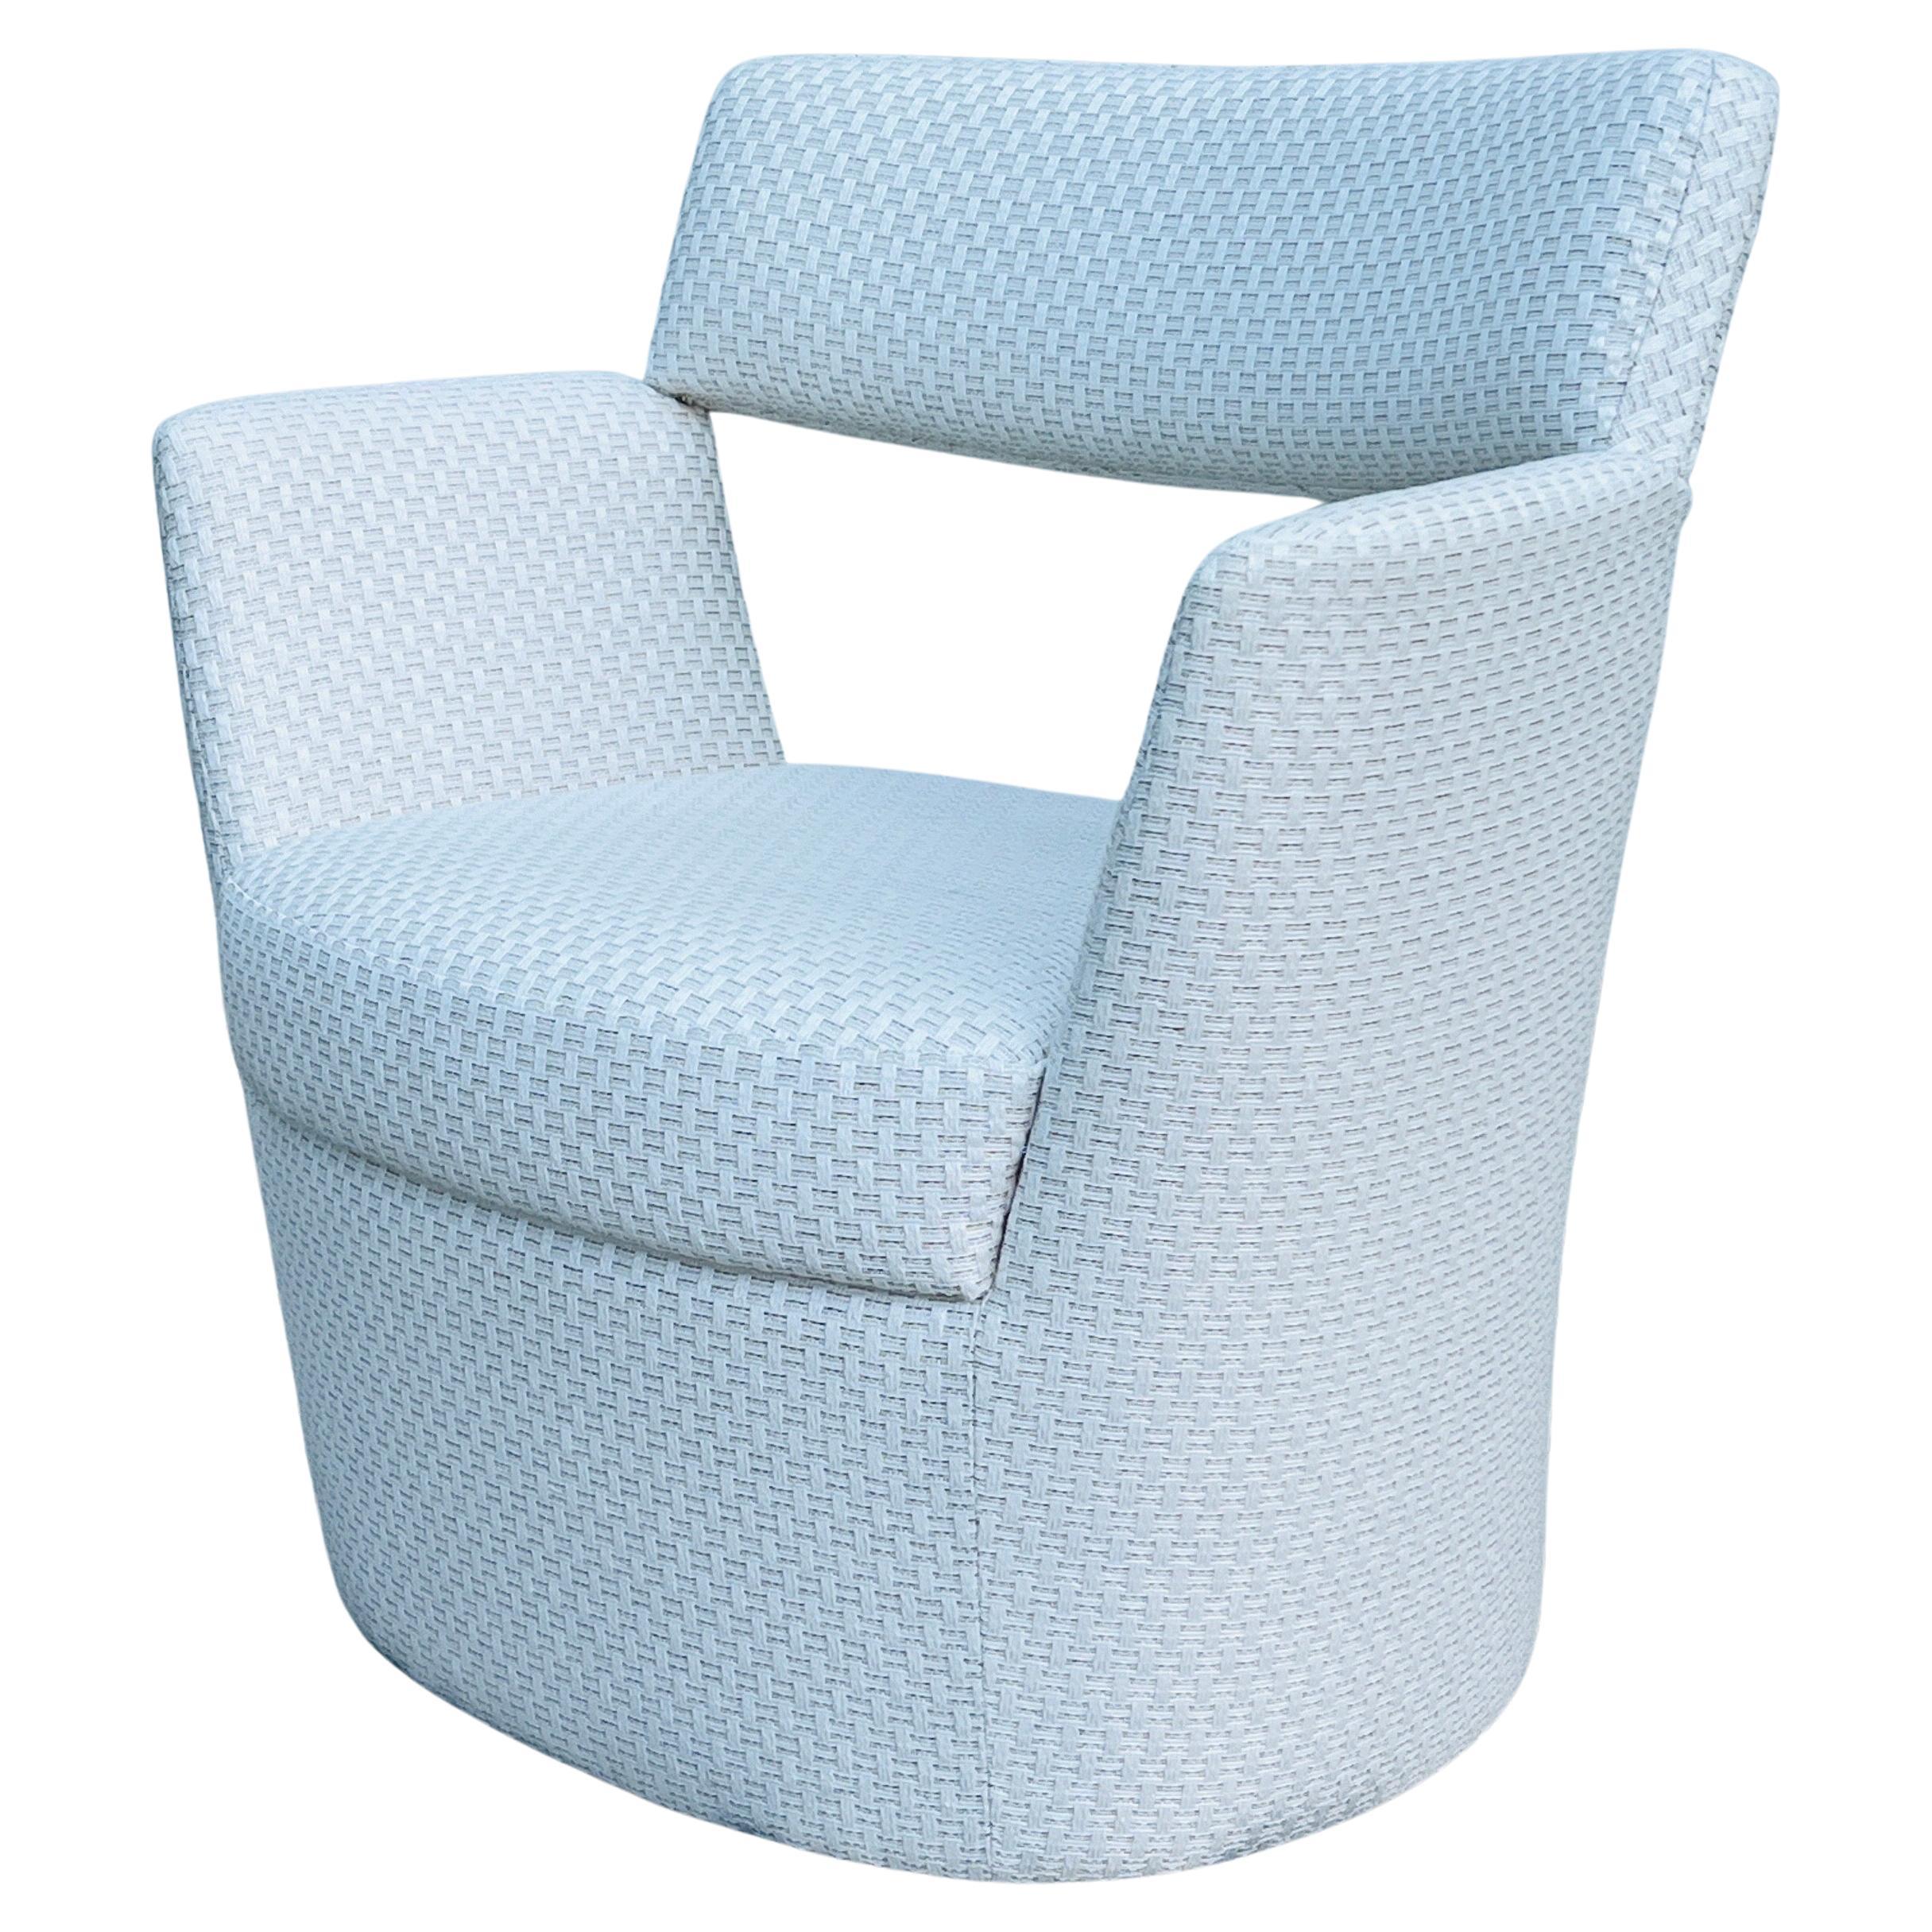 Zeitgenössischer Sessel, entworfen von Goncalo Compos für Pierre Frey. Der modernistische Stuhl hat eine hängende Rückenlehne mit grafischen, kantigen Linien auf einem runden Sockel. Vollständig gepolstert mit Sete Chaux von Pierre Frey, einem